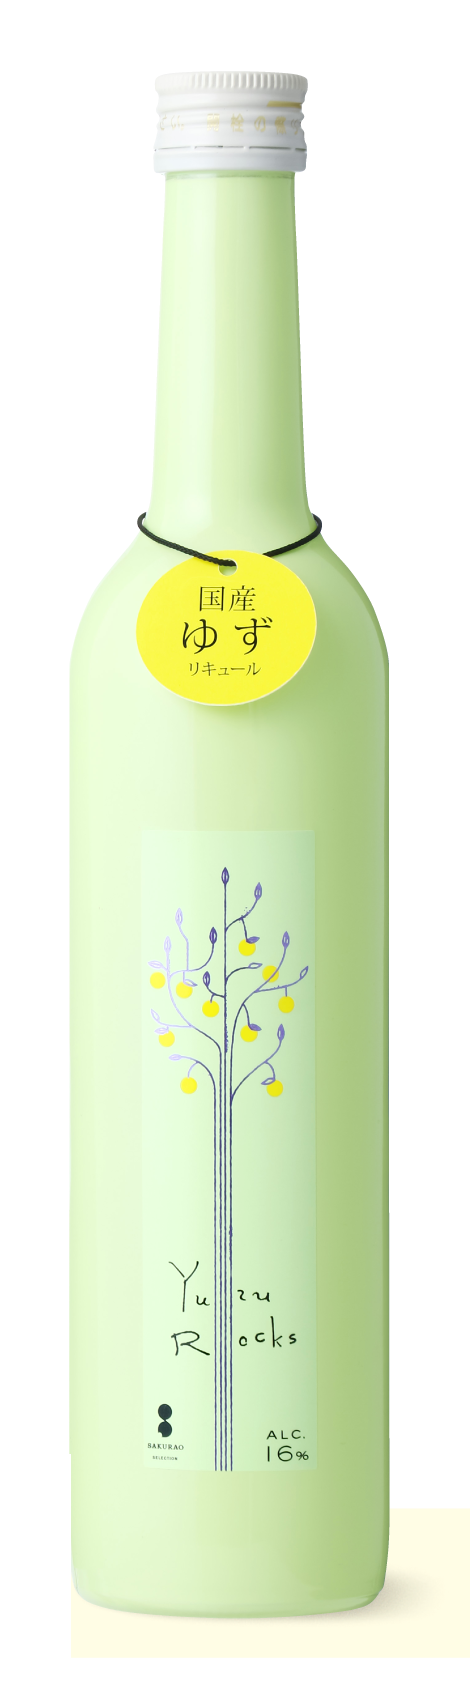 YUzu Rocks Bottle